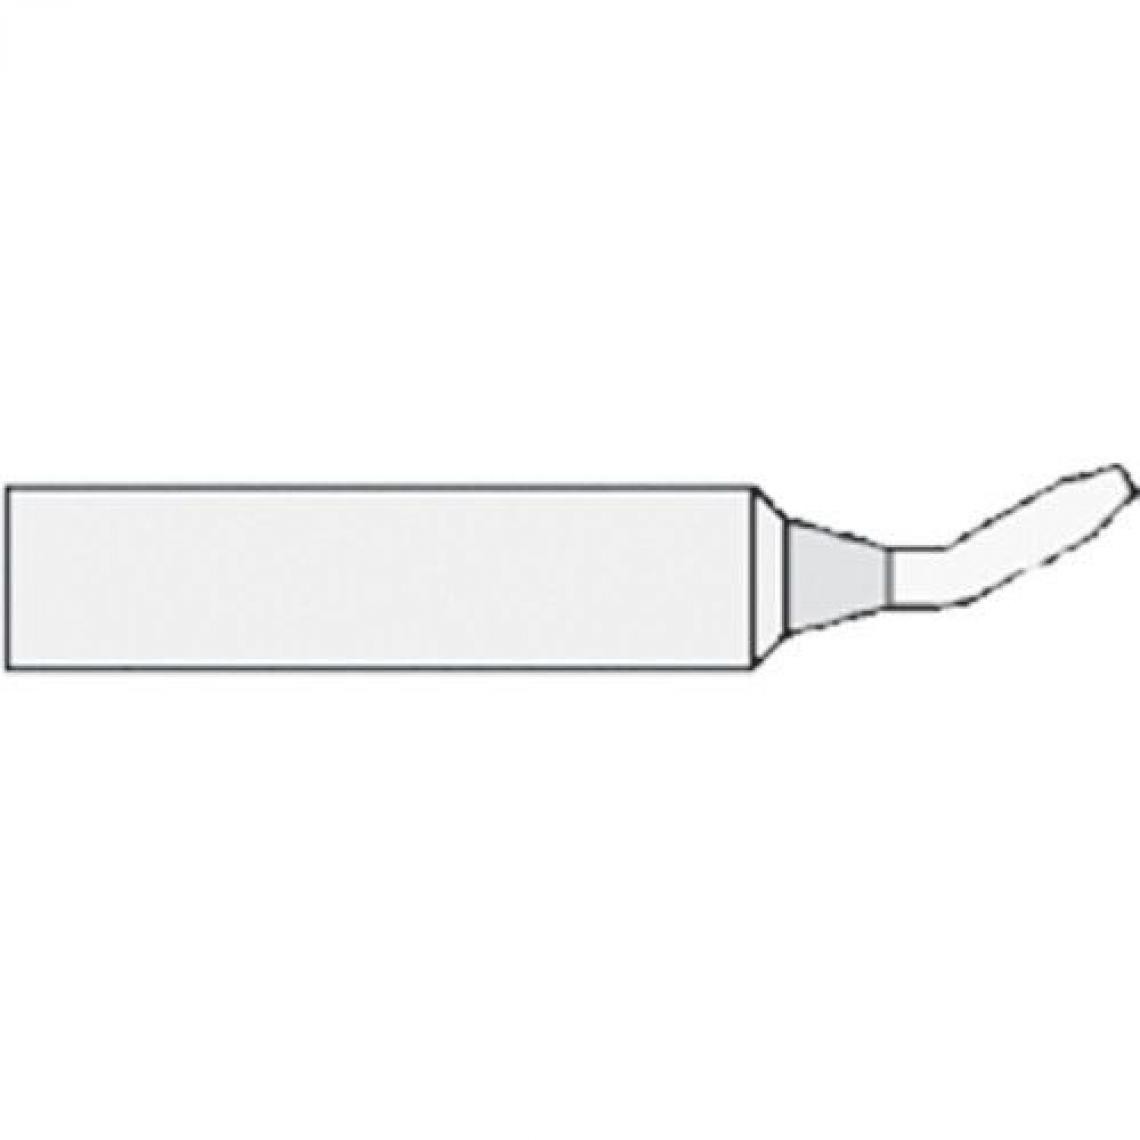 Inconnu - Panne de fer à souder forme de burin, coudée Weller Professional T0054486499 Taille de la panne 1.6 mm 1 pc(s) - Fer à souder